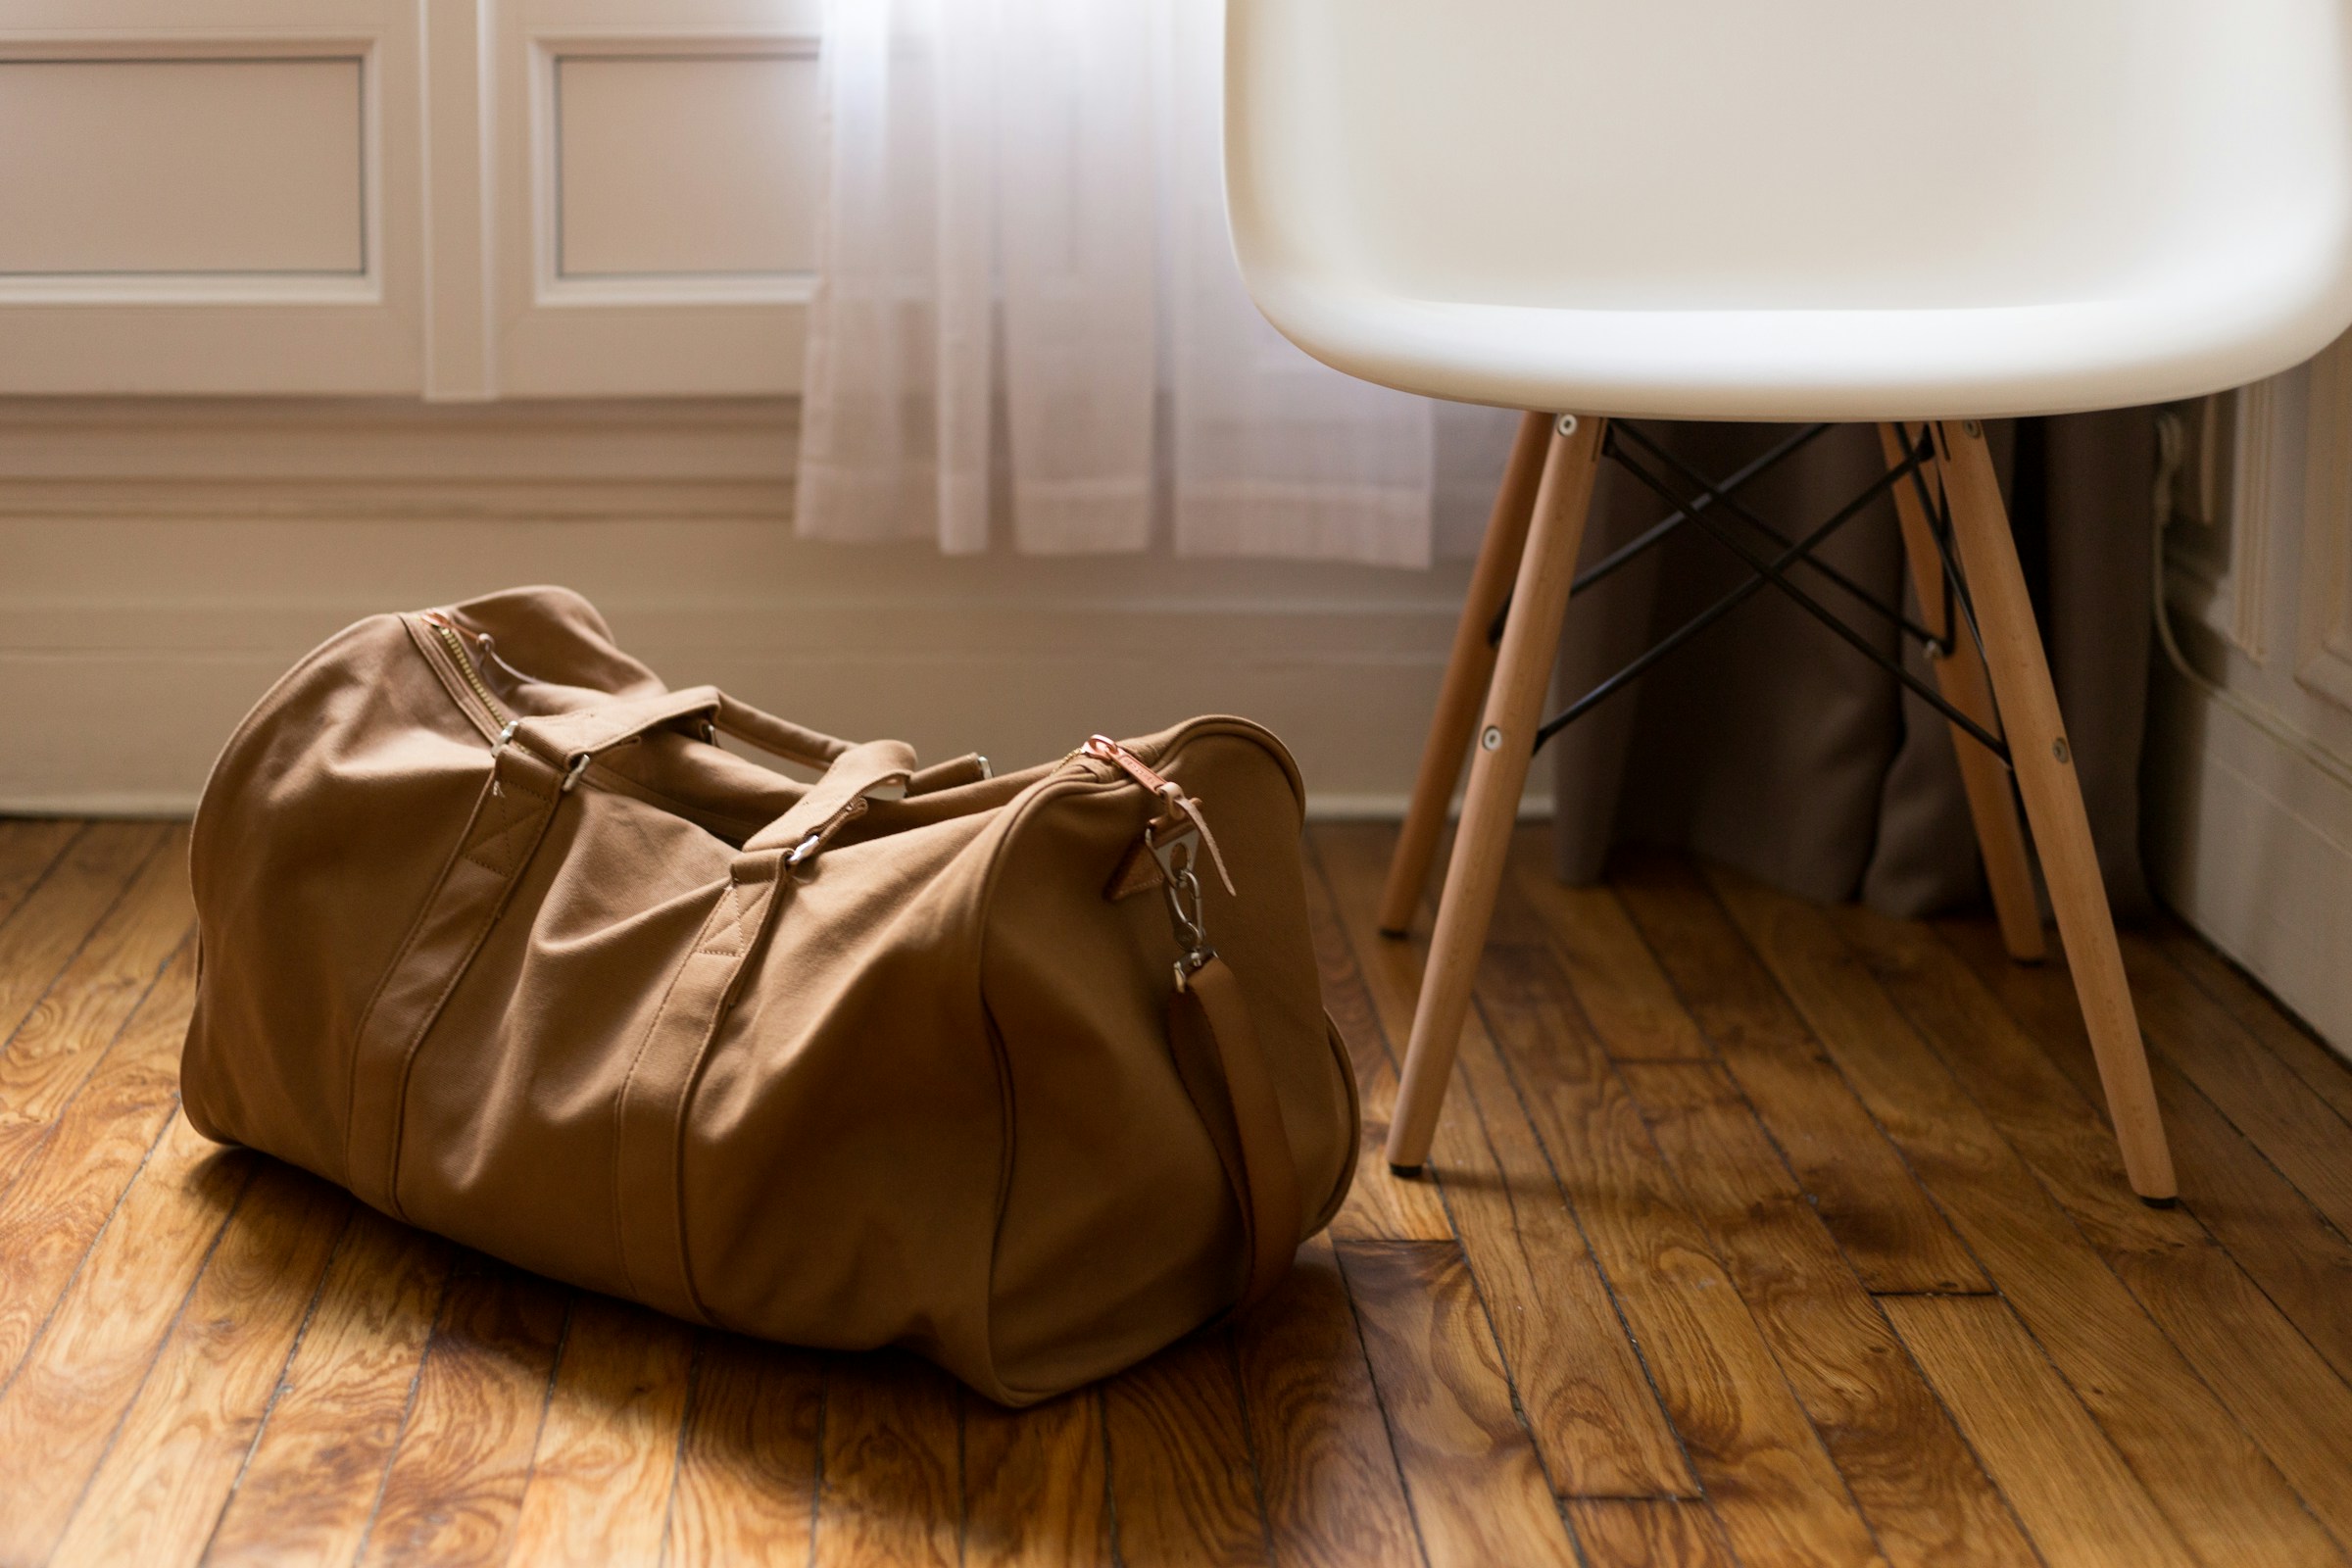 Una bolsa de lona marrón en el suelo | Fuente: Unsplash